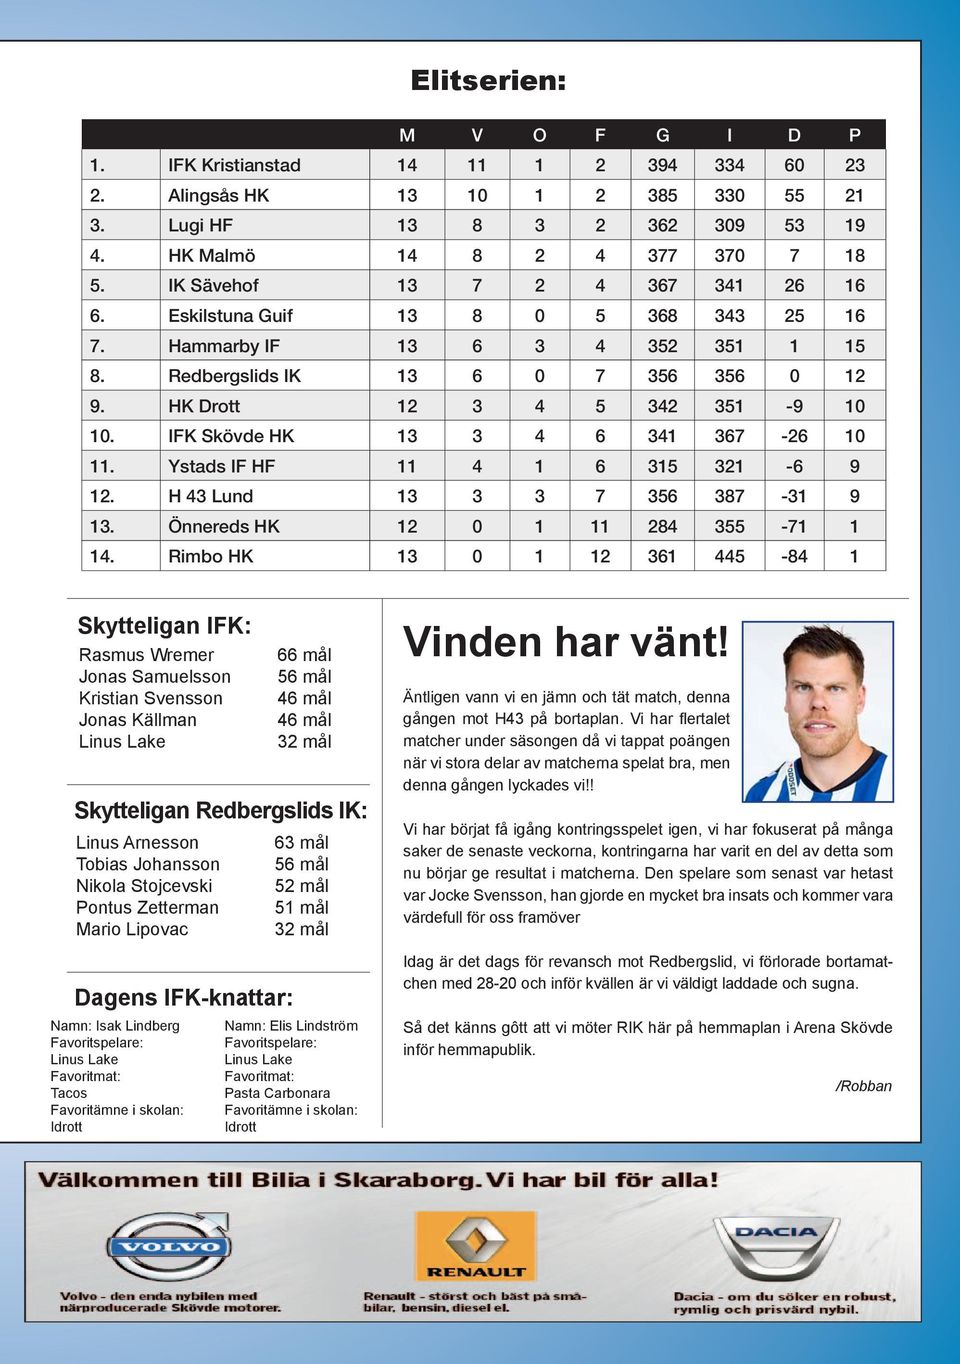 IFK Skövde HK 13 3 4 6 341 367-26 10 11. Ystads IF HF 11 4 1 6 315 321-6 9 12. H 43 Lund 13 3 3 7 356 387-31 9 13. Önnereds HK 12 0 1 11 284 355-71 1 14.